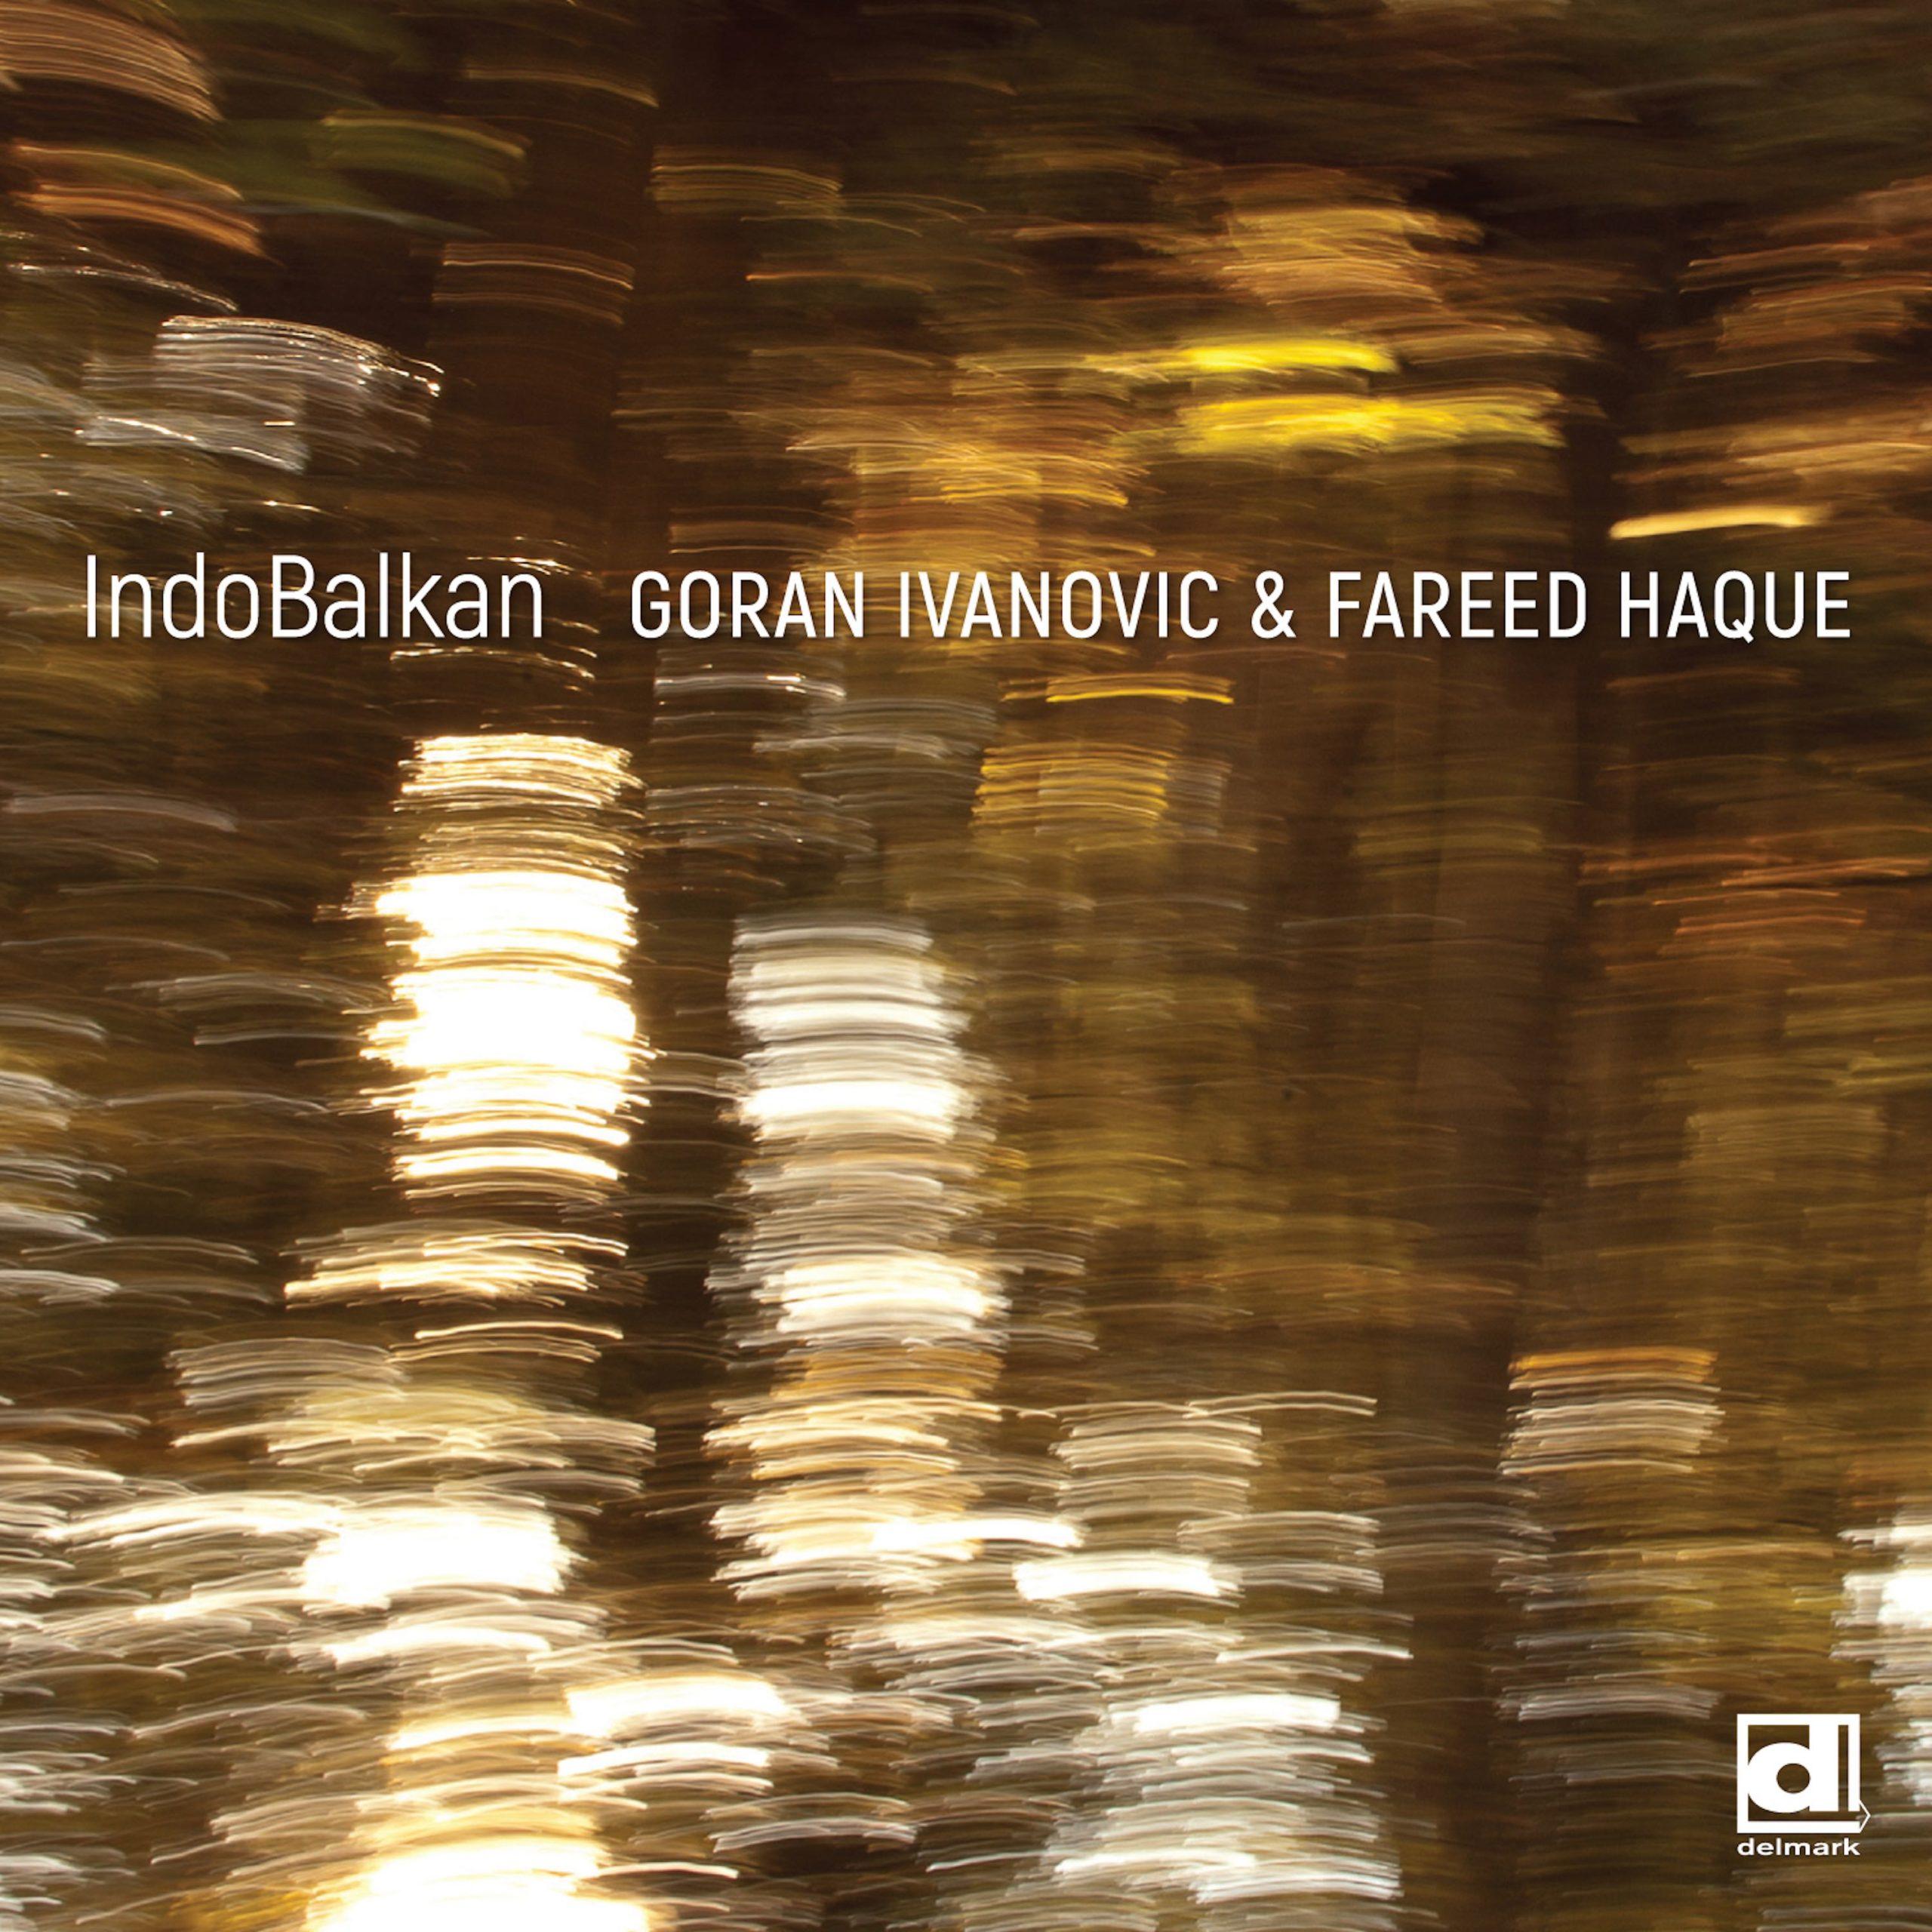 IndoBalkan - Goran Ivanovic & Fareed Haque